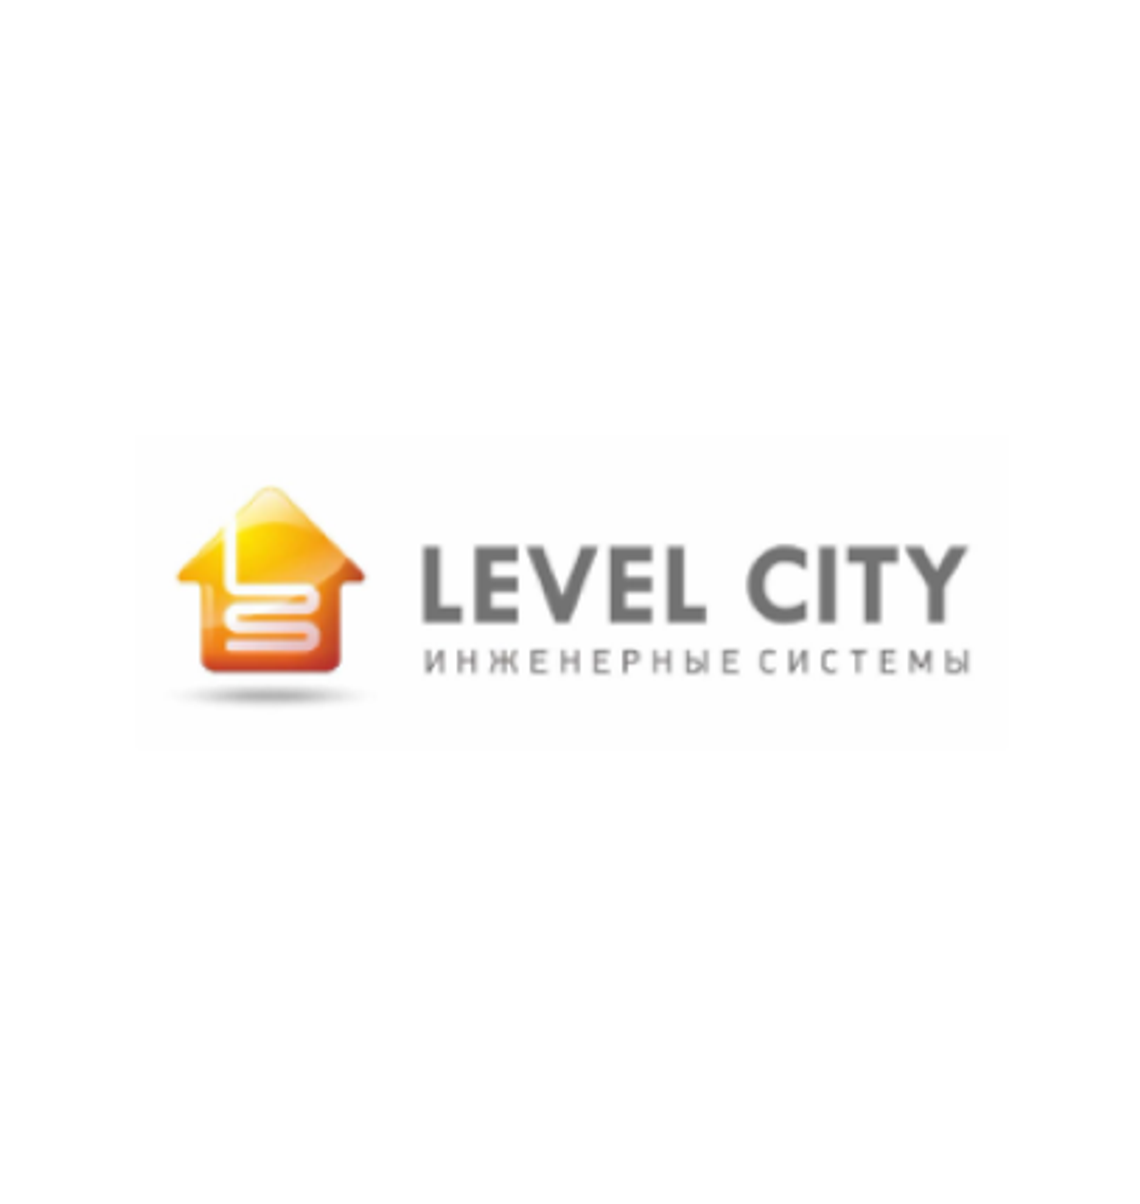 Level city